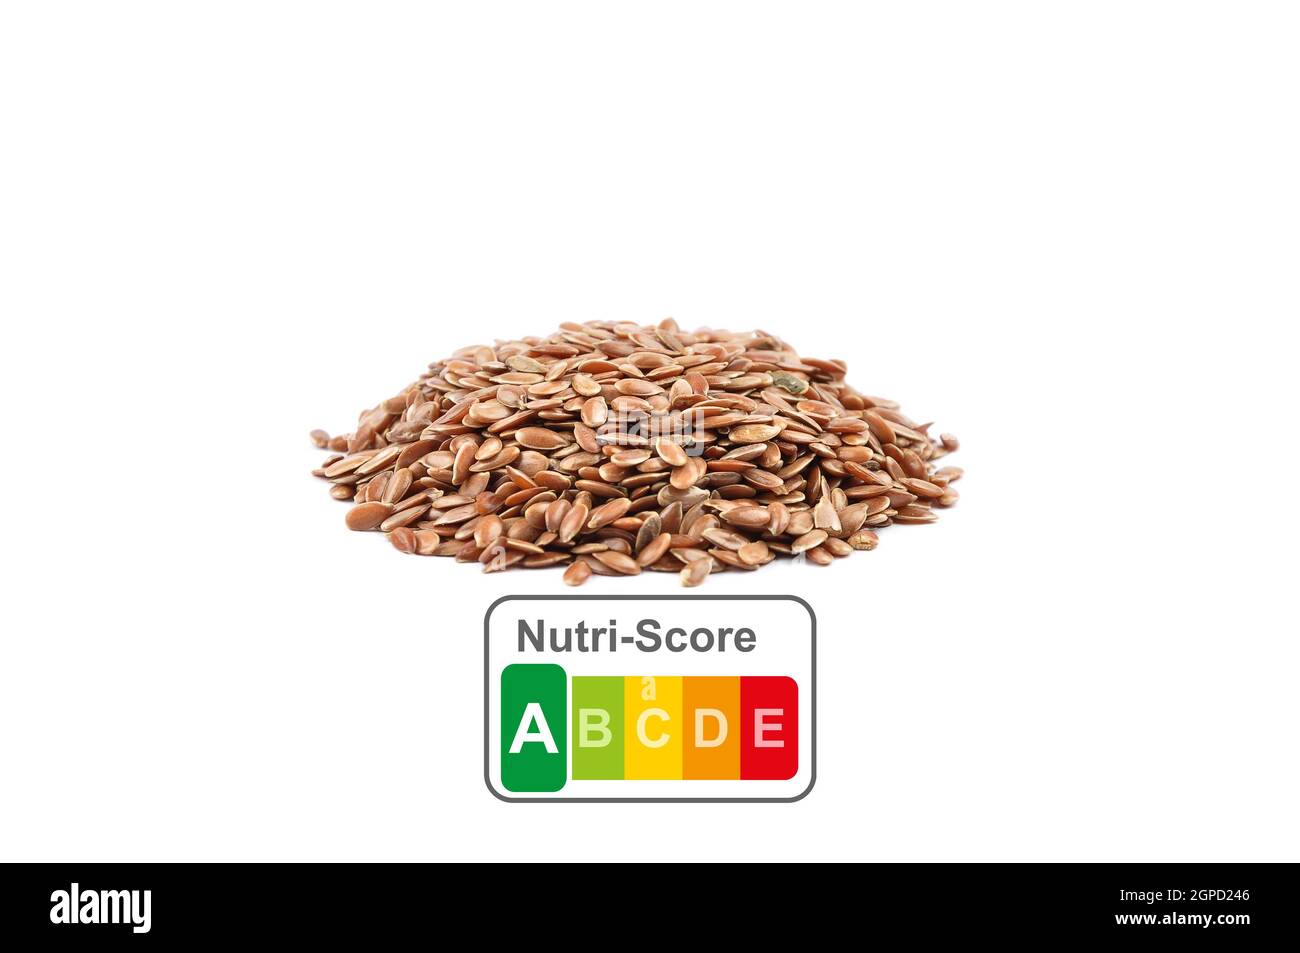 Präsentation der Lebensmittelkennzeichnung mit dem Nutri-Score von Leinsamen Stockfoto